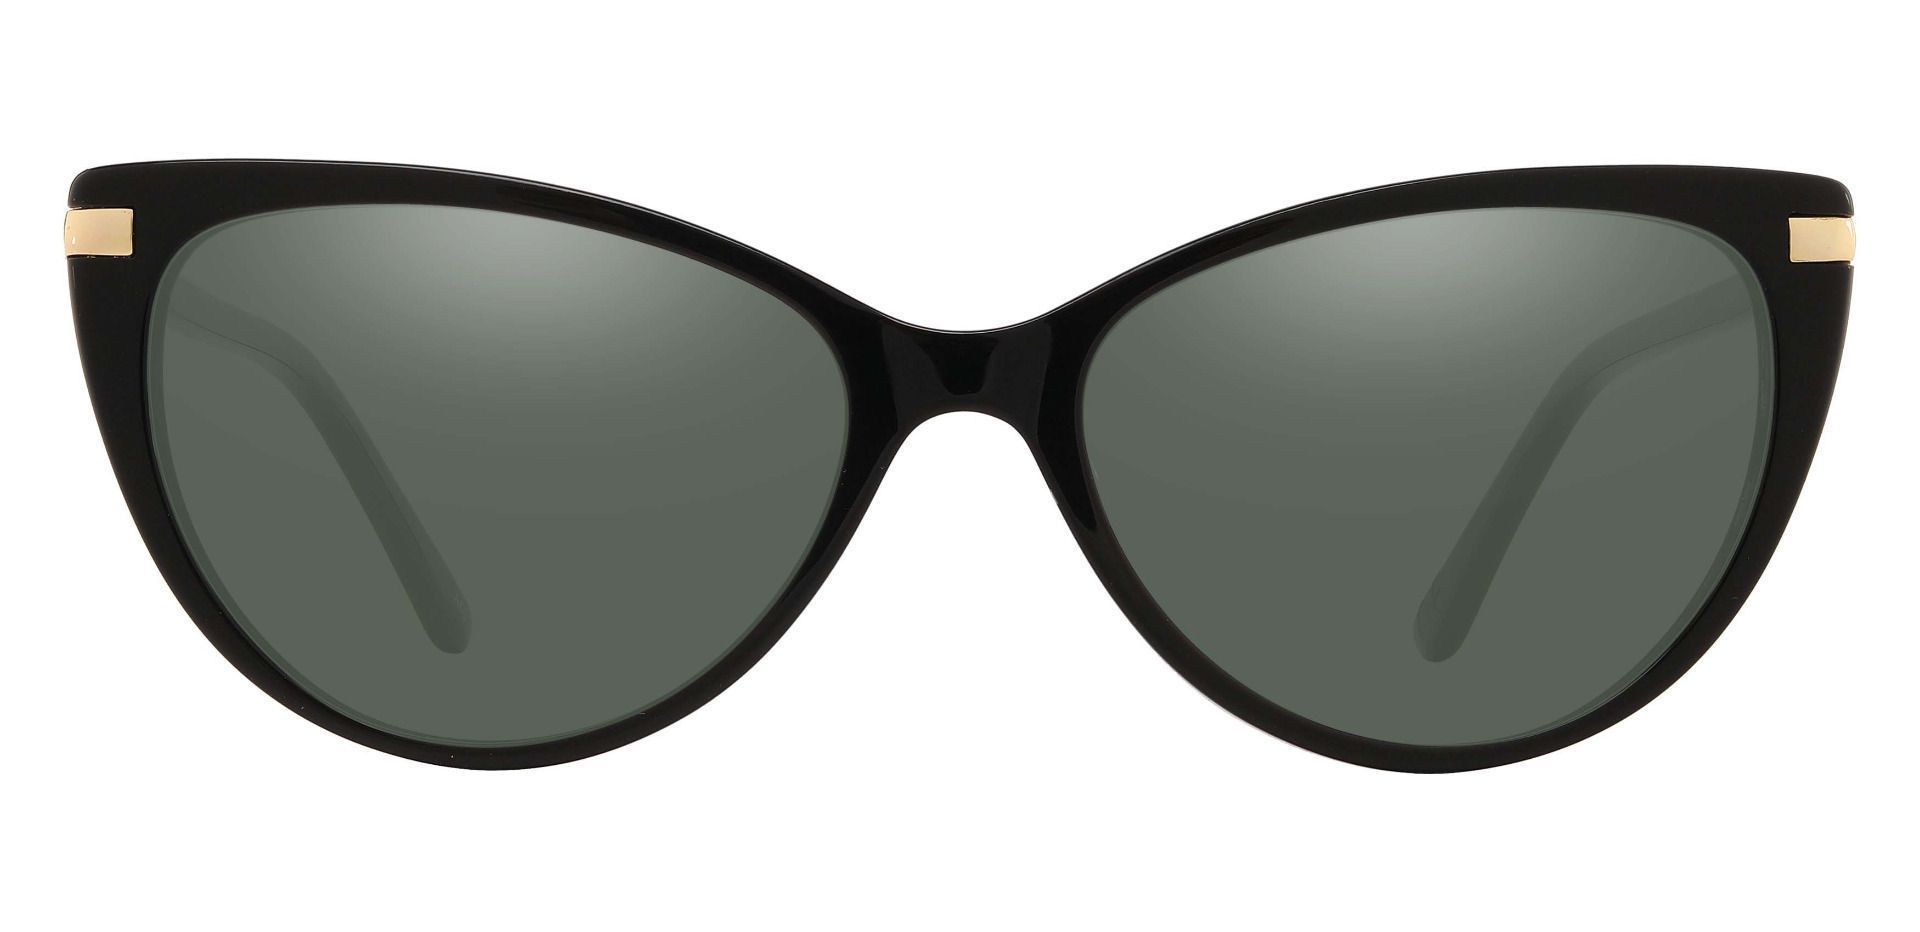 Starla Cat Eye Reading Sunglasses - Black Frame With Green Lenses